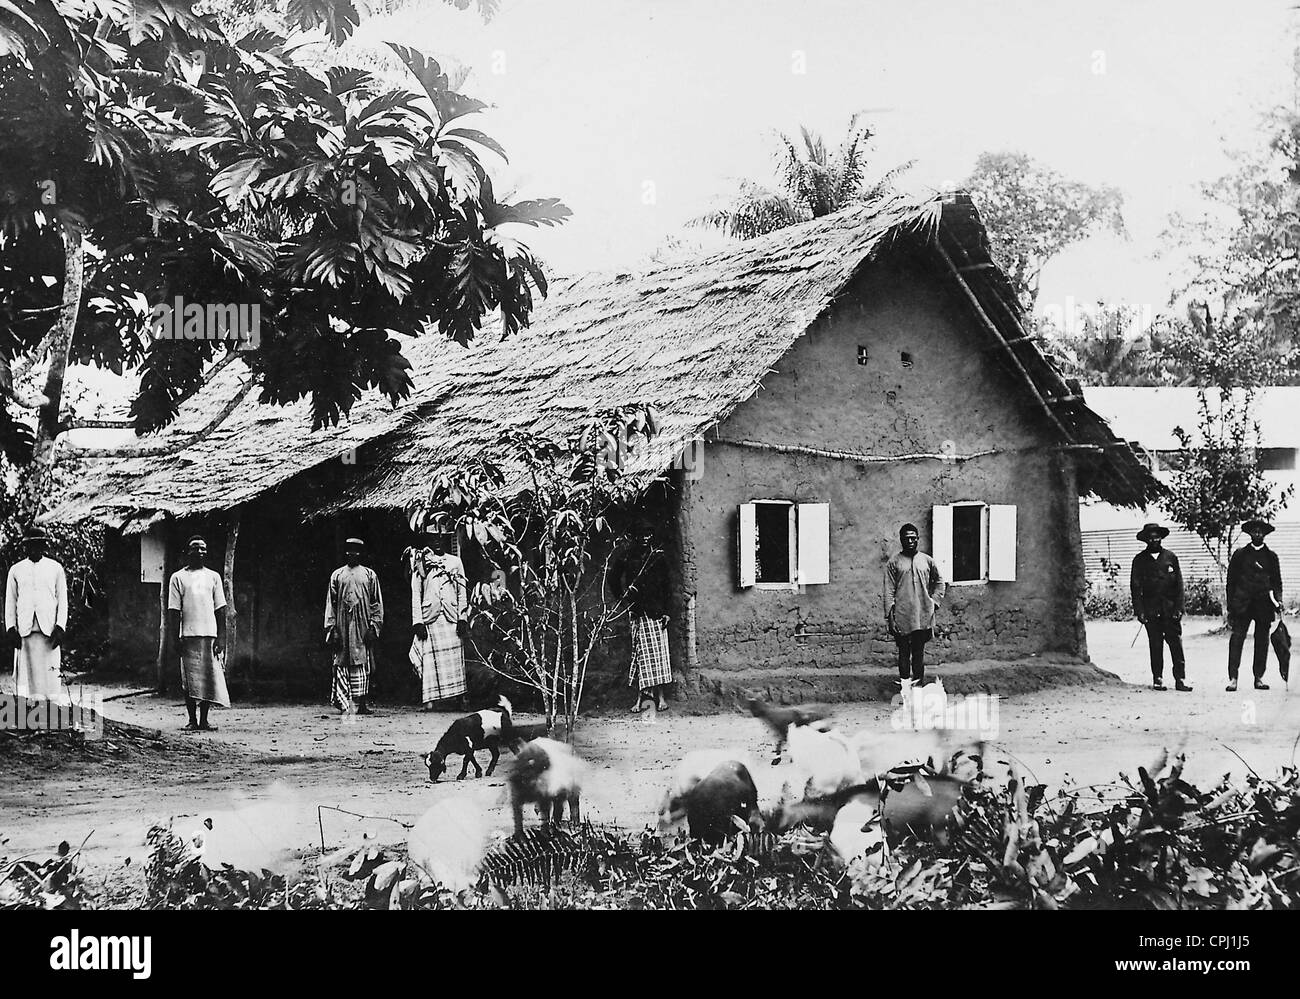 Aula a seguito di stile Europeo e in Camerun, 1911 Foto Stock